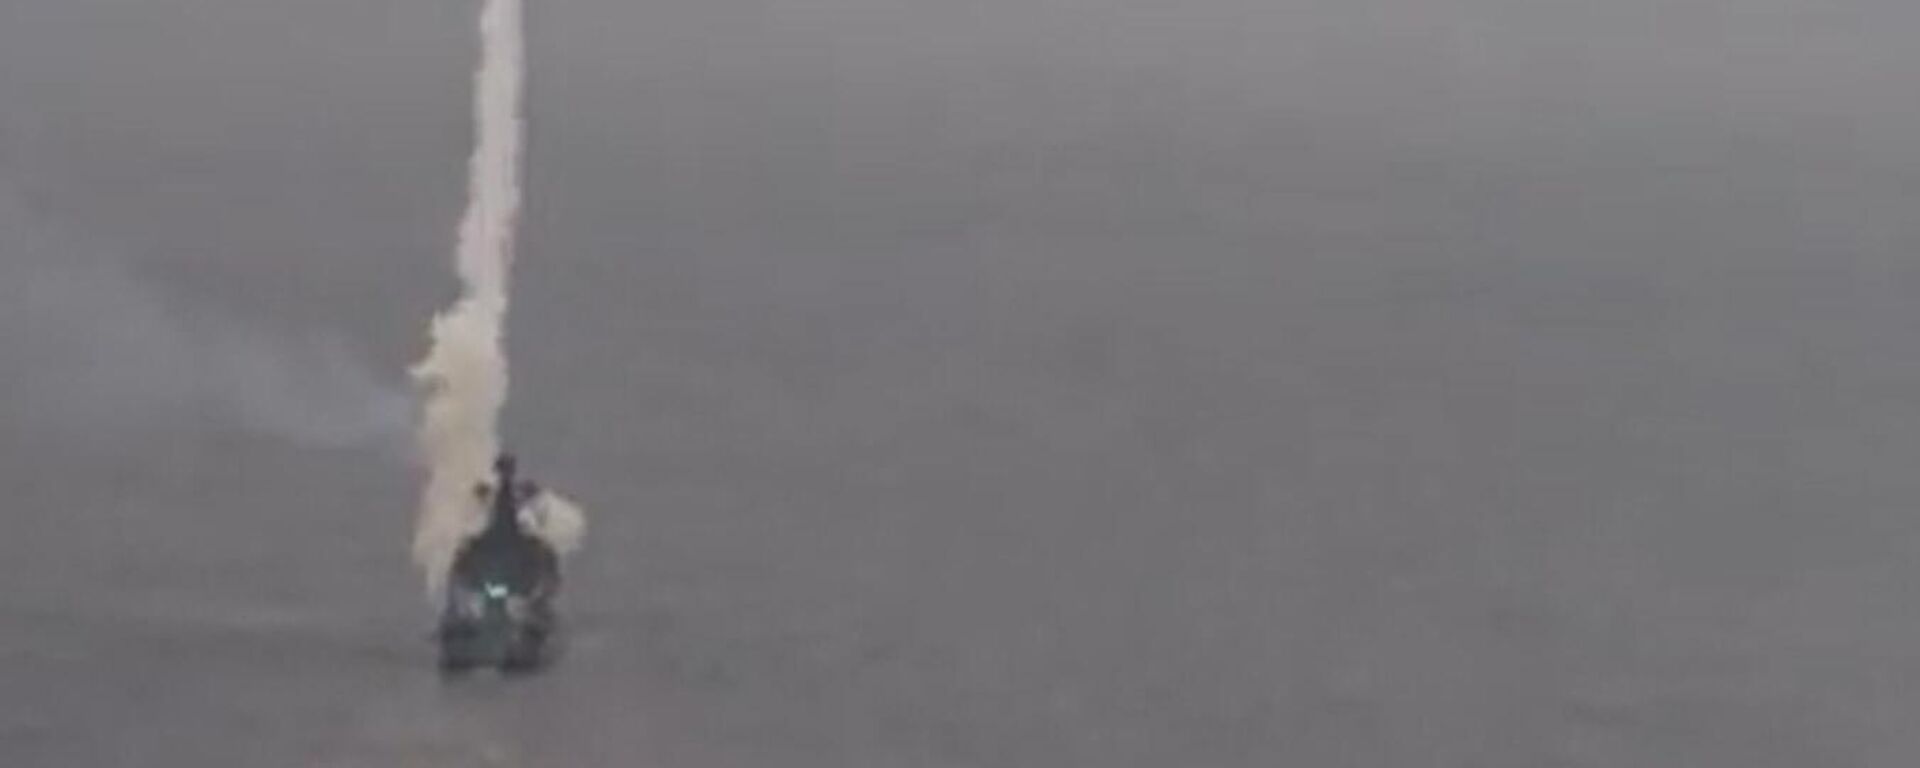 Rus fırkateyni 'Mareşal Şapoşnikov', Japon Denizi'ndeki su altı hedeflerini 'Otvet' füzeleriyle vurdu. - Sputnik Türkiye, 1920, 16.12.2021